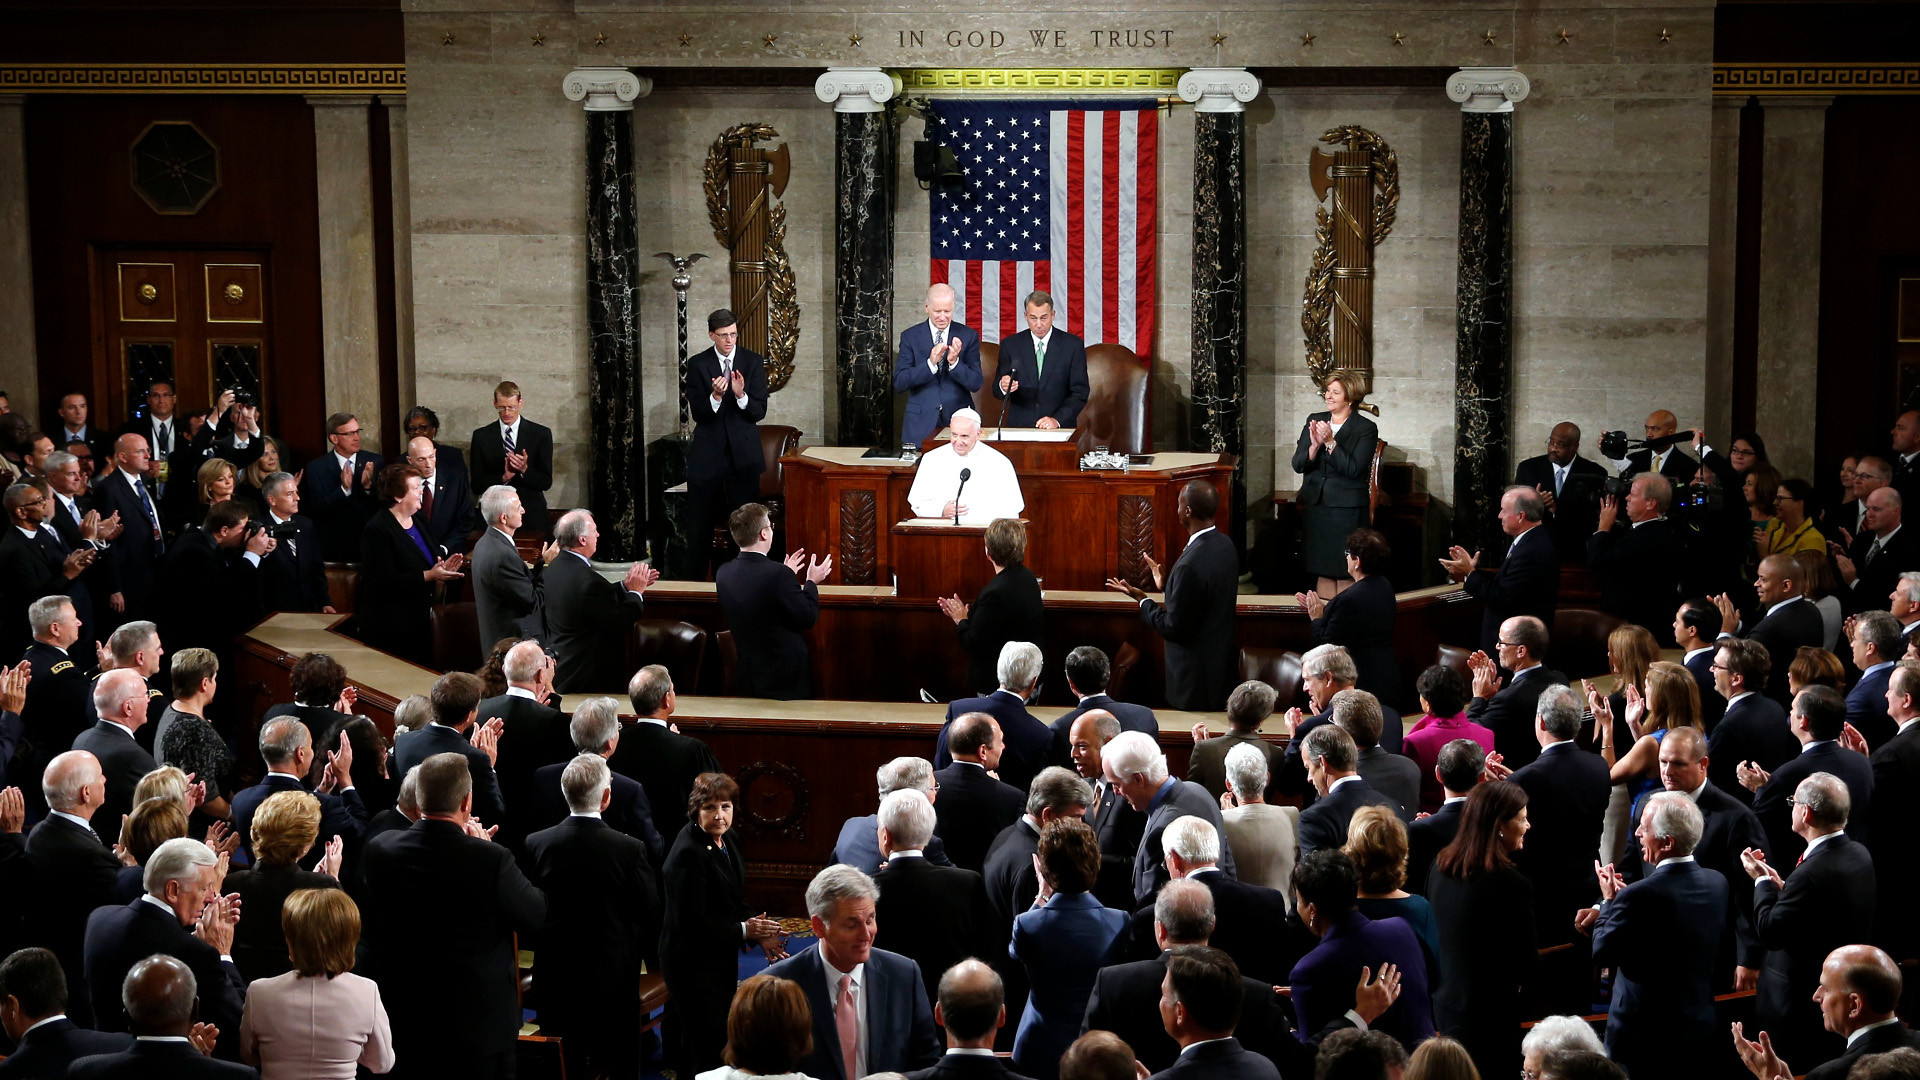 Papst Franziskus spricht im US-Kongress